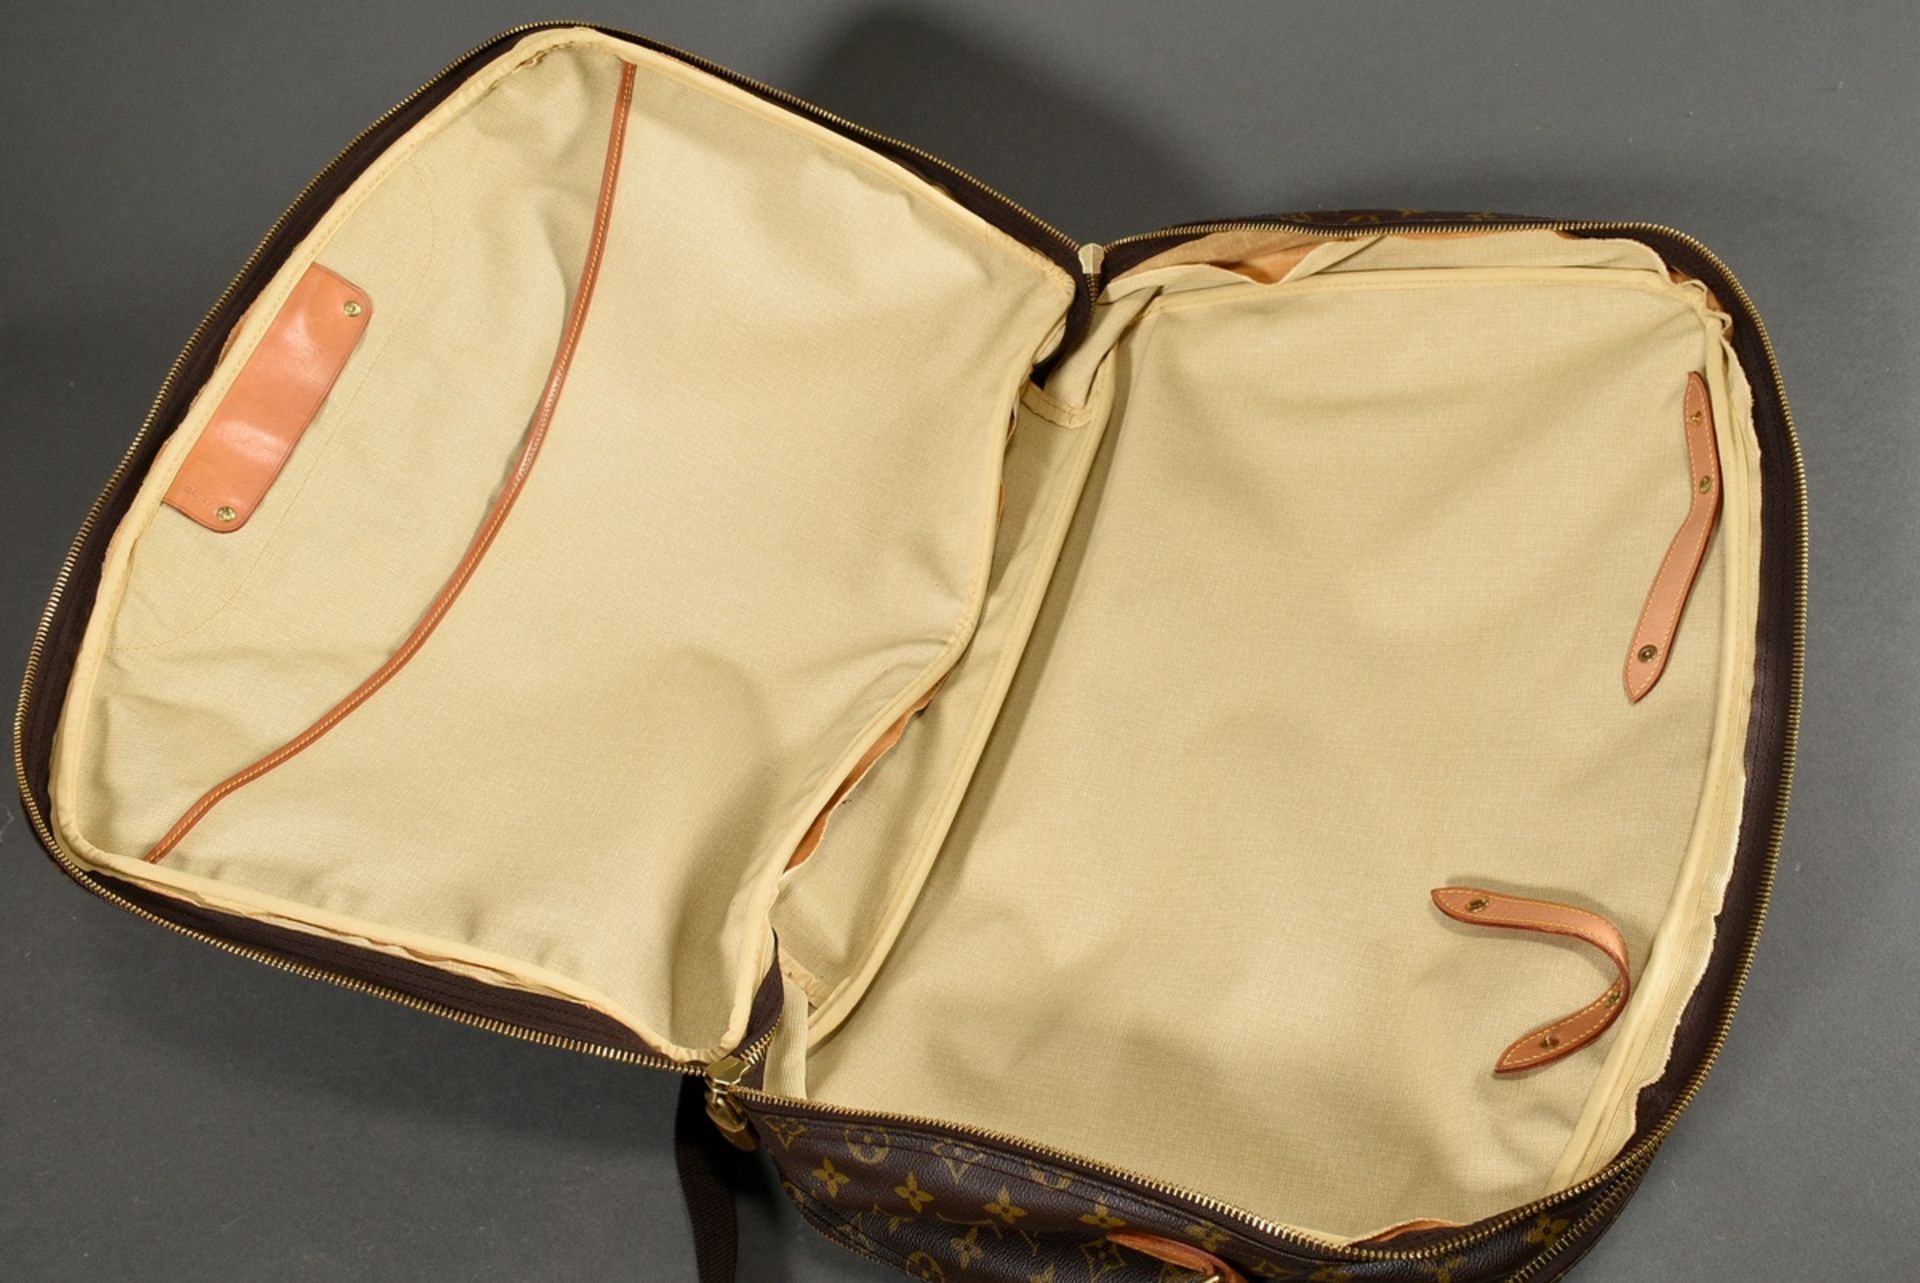 Louis Vuitton Reisetasche "Alize" in Monogramm Canvas, doppelter Zwei-Wege Reißverschluss mit zwei  - Bild 10 aus 11